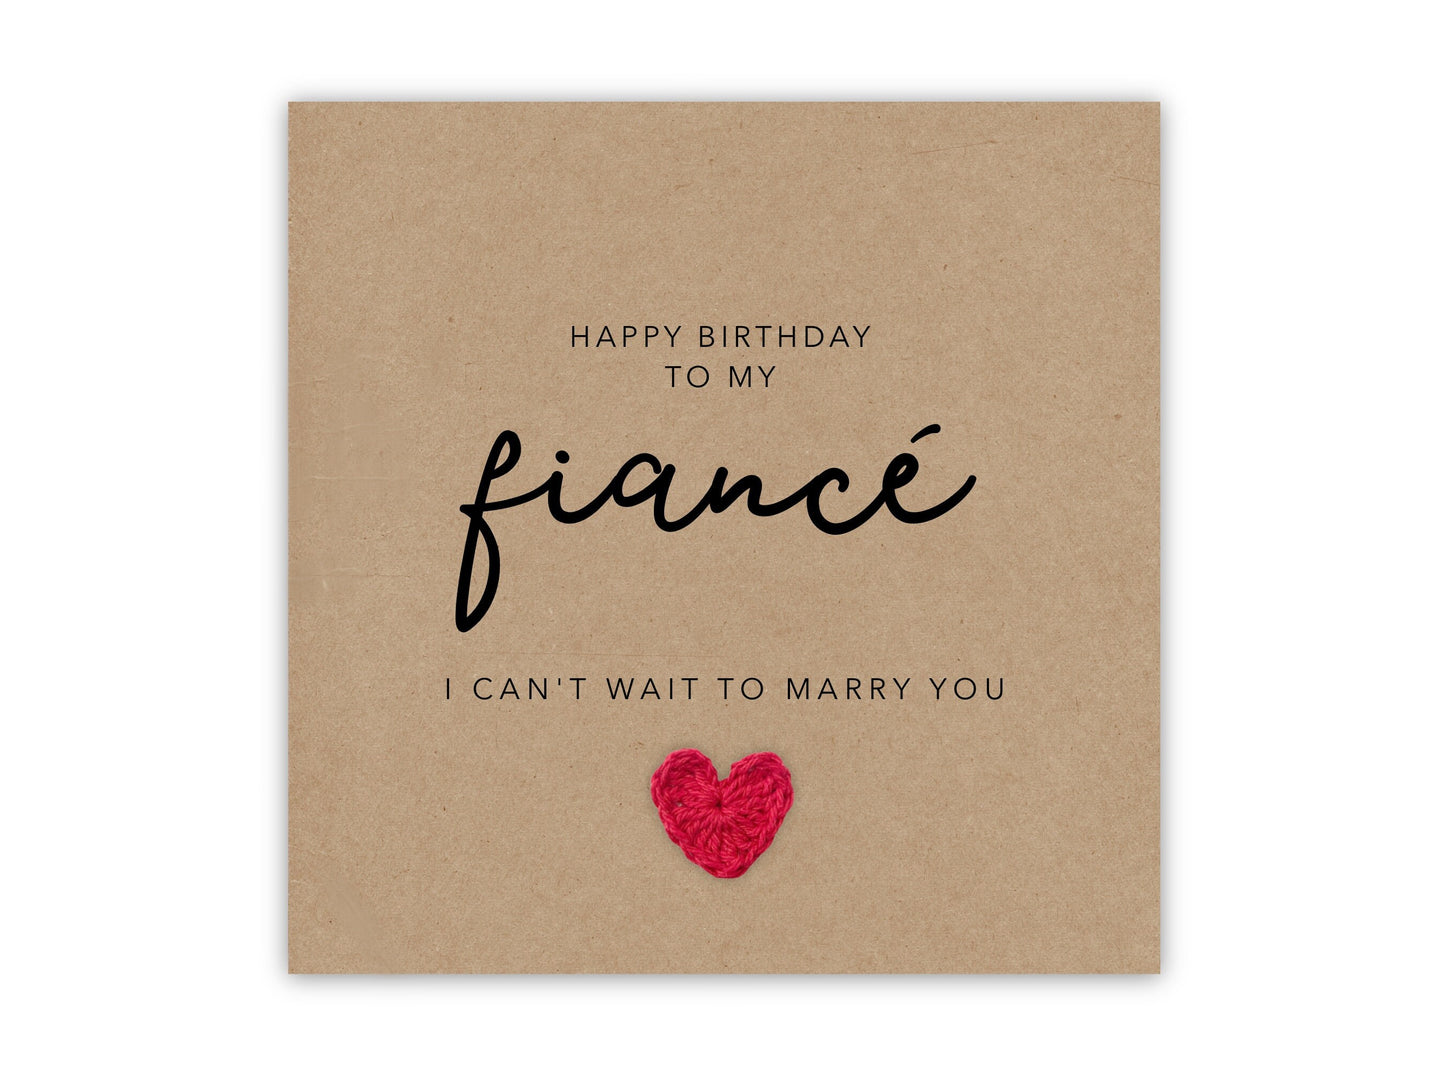 Fianc‚Äö√†√∂¬¨¬© Anniversary Card, Husband To Be Anniversary Card, Anniversary Card For Fianc‚Äö√†√∂¬¨¬©, Hubby To Be Anniversary Card, Fianc‚Äö√†√∂¬¨¬© Birthday Card